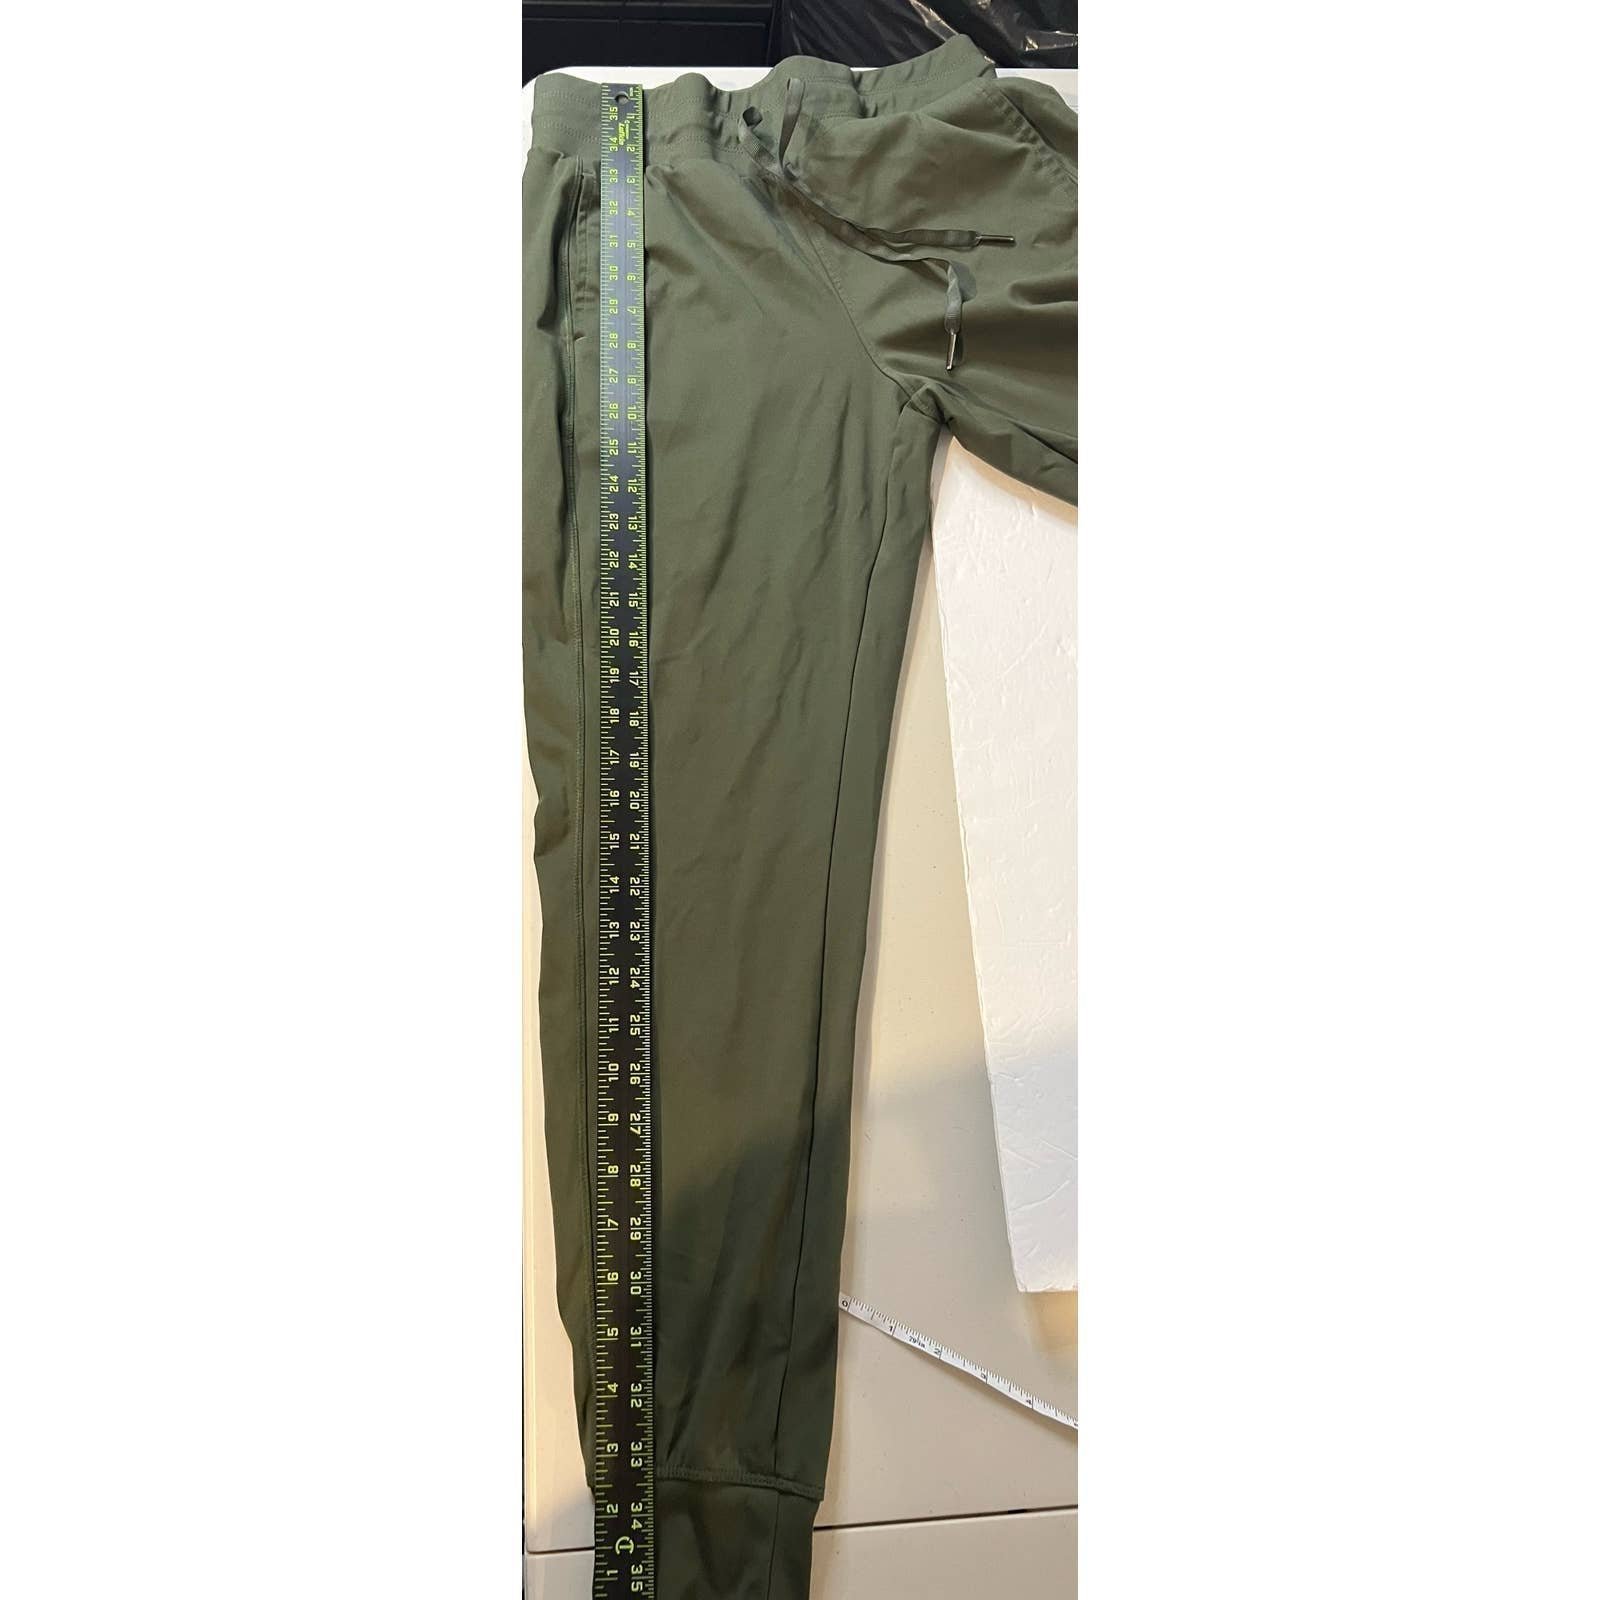 big discount Avia Women´s Pants Size S 4/6 Olive Green Color Elastic Waist Drawstring P2Aur4uMz no tax